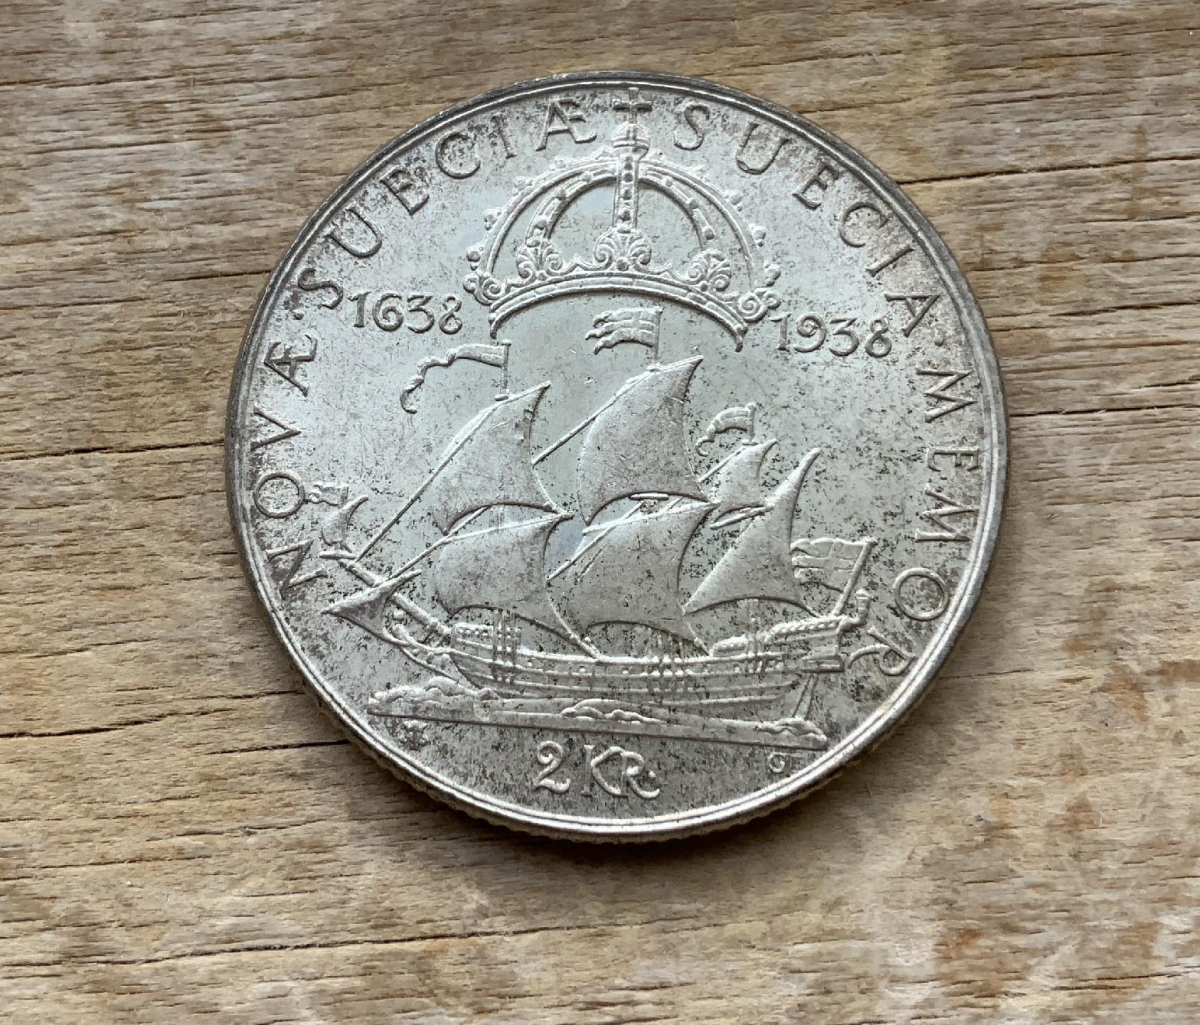 1938 Sweden 2 Kroner .800 silver coin C270